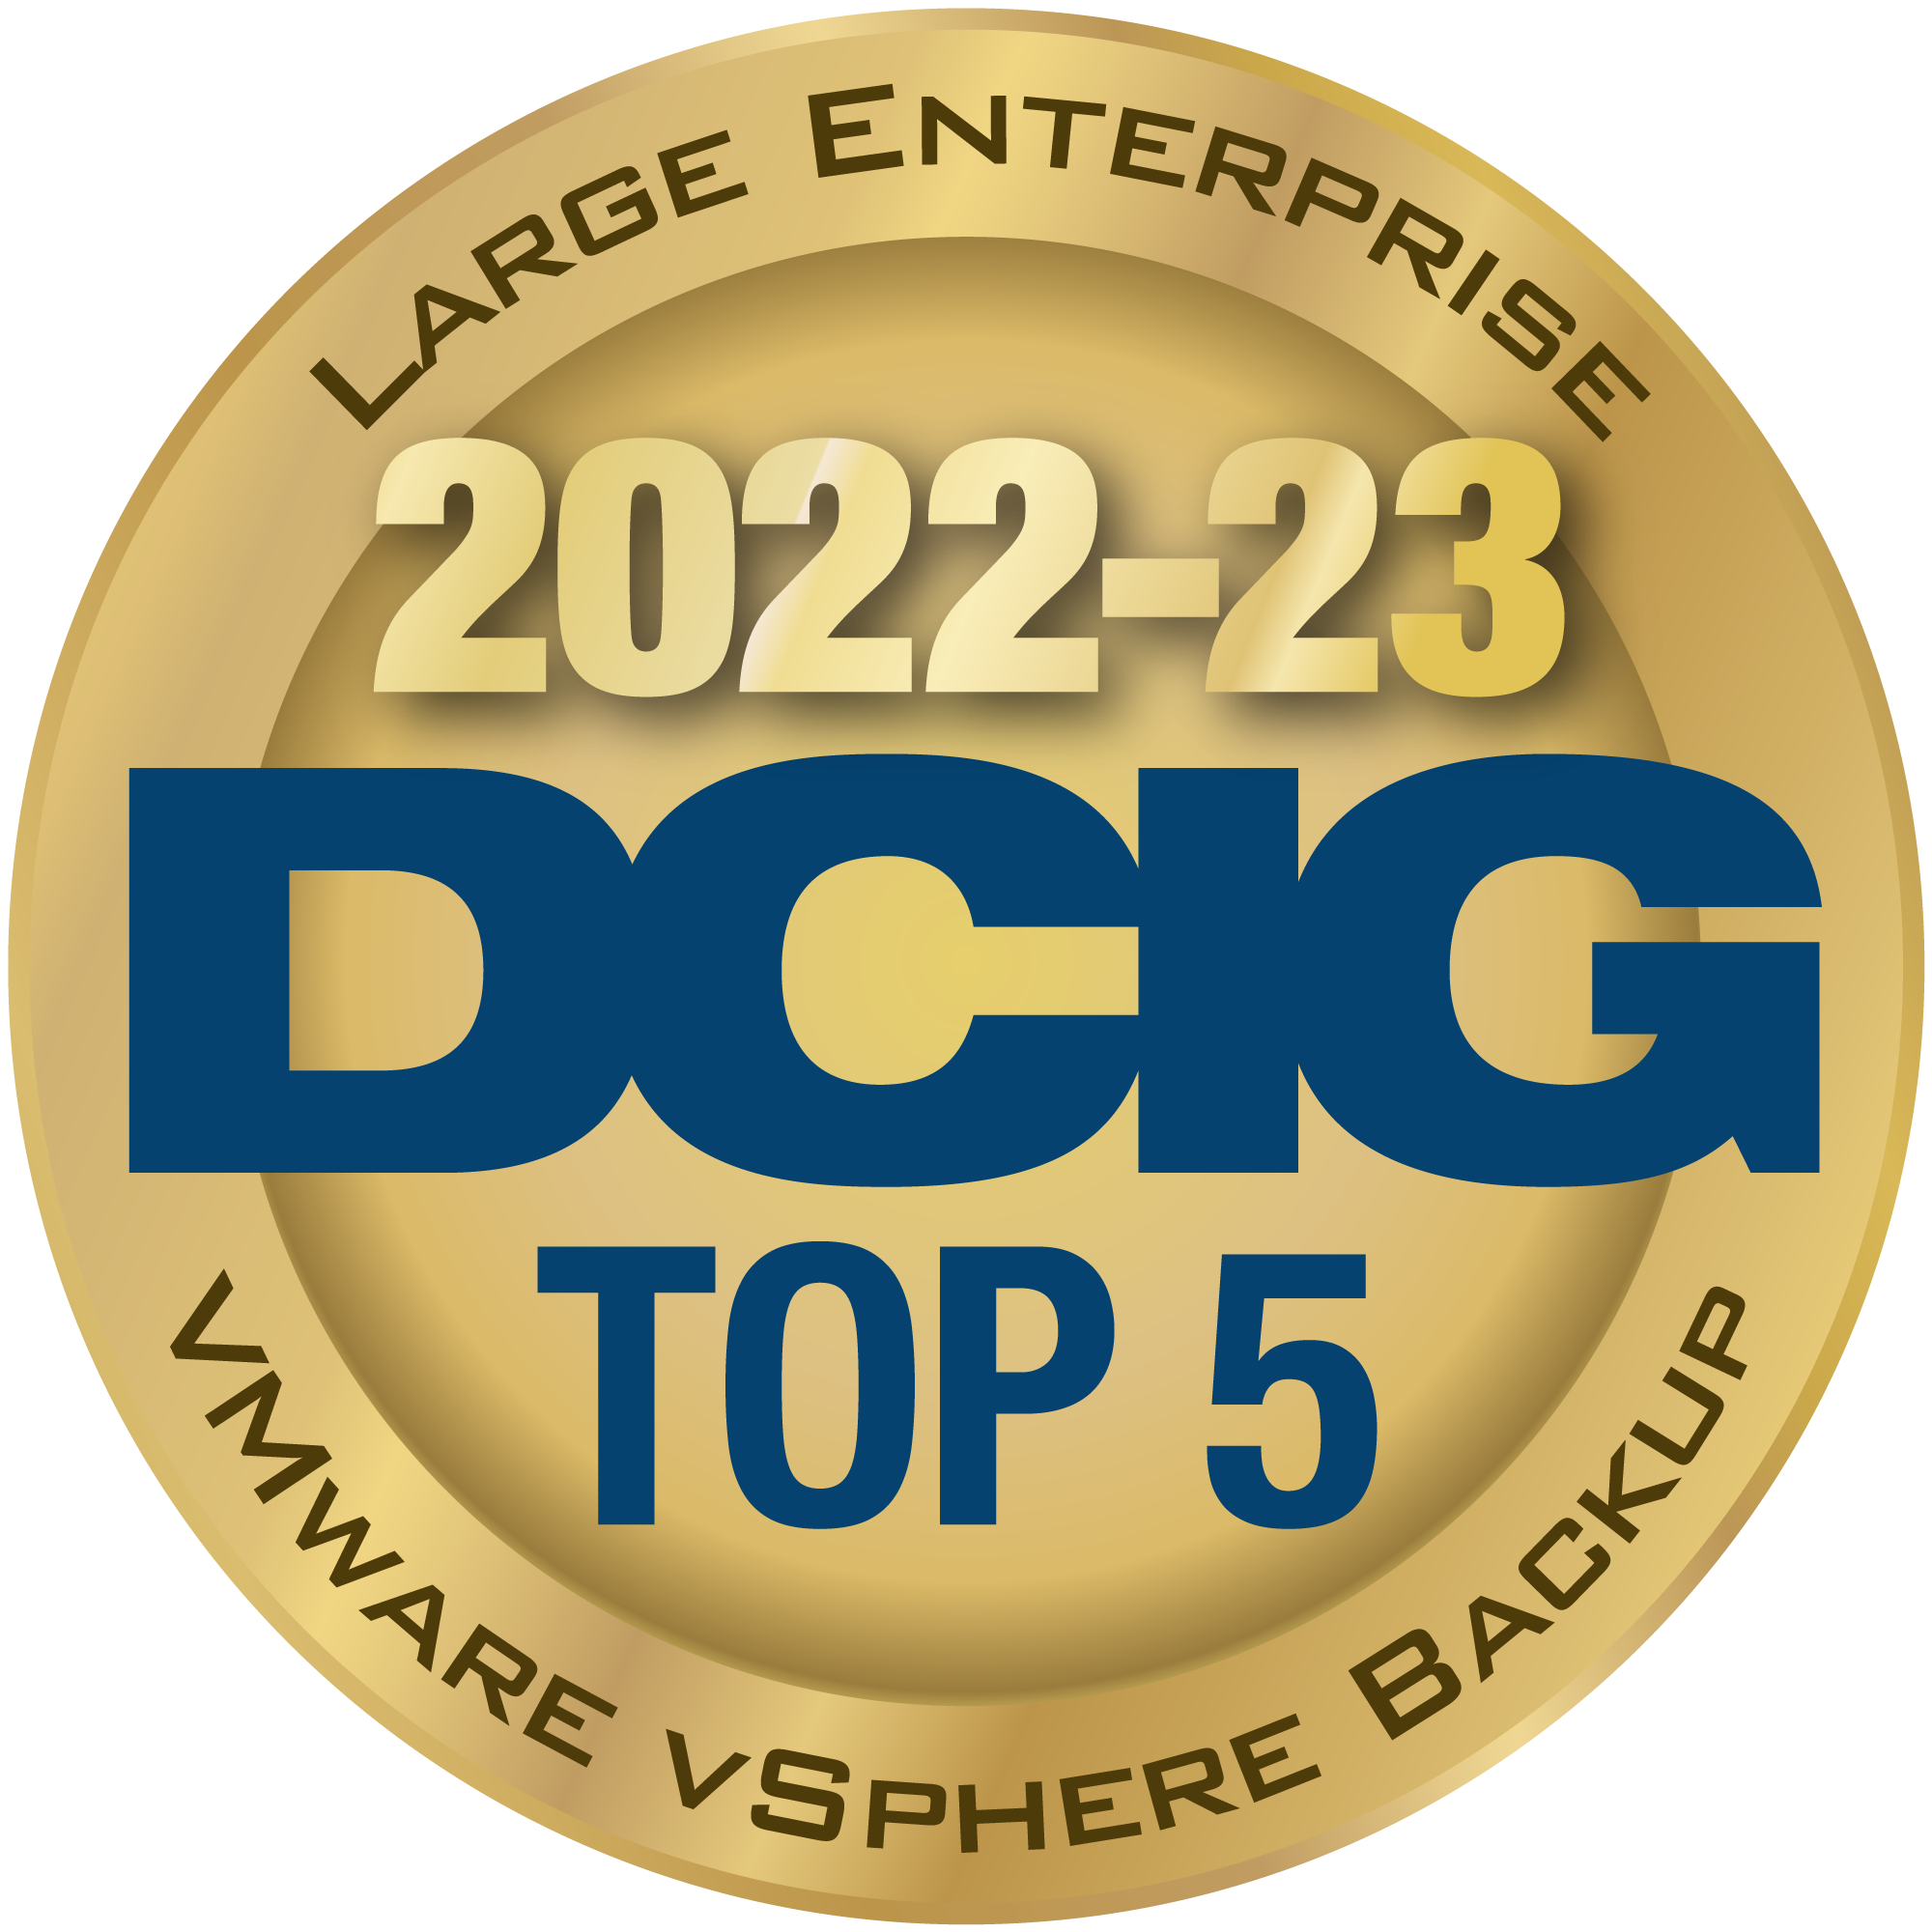 HYCU a DCIG TOP 5 Large Enterprise VMware vSphere Backup Solution